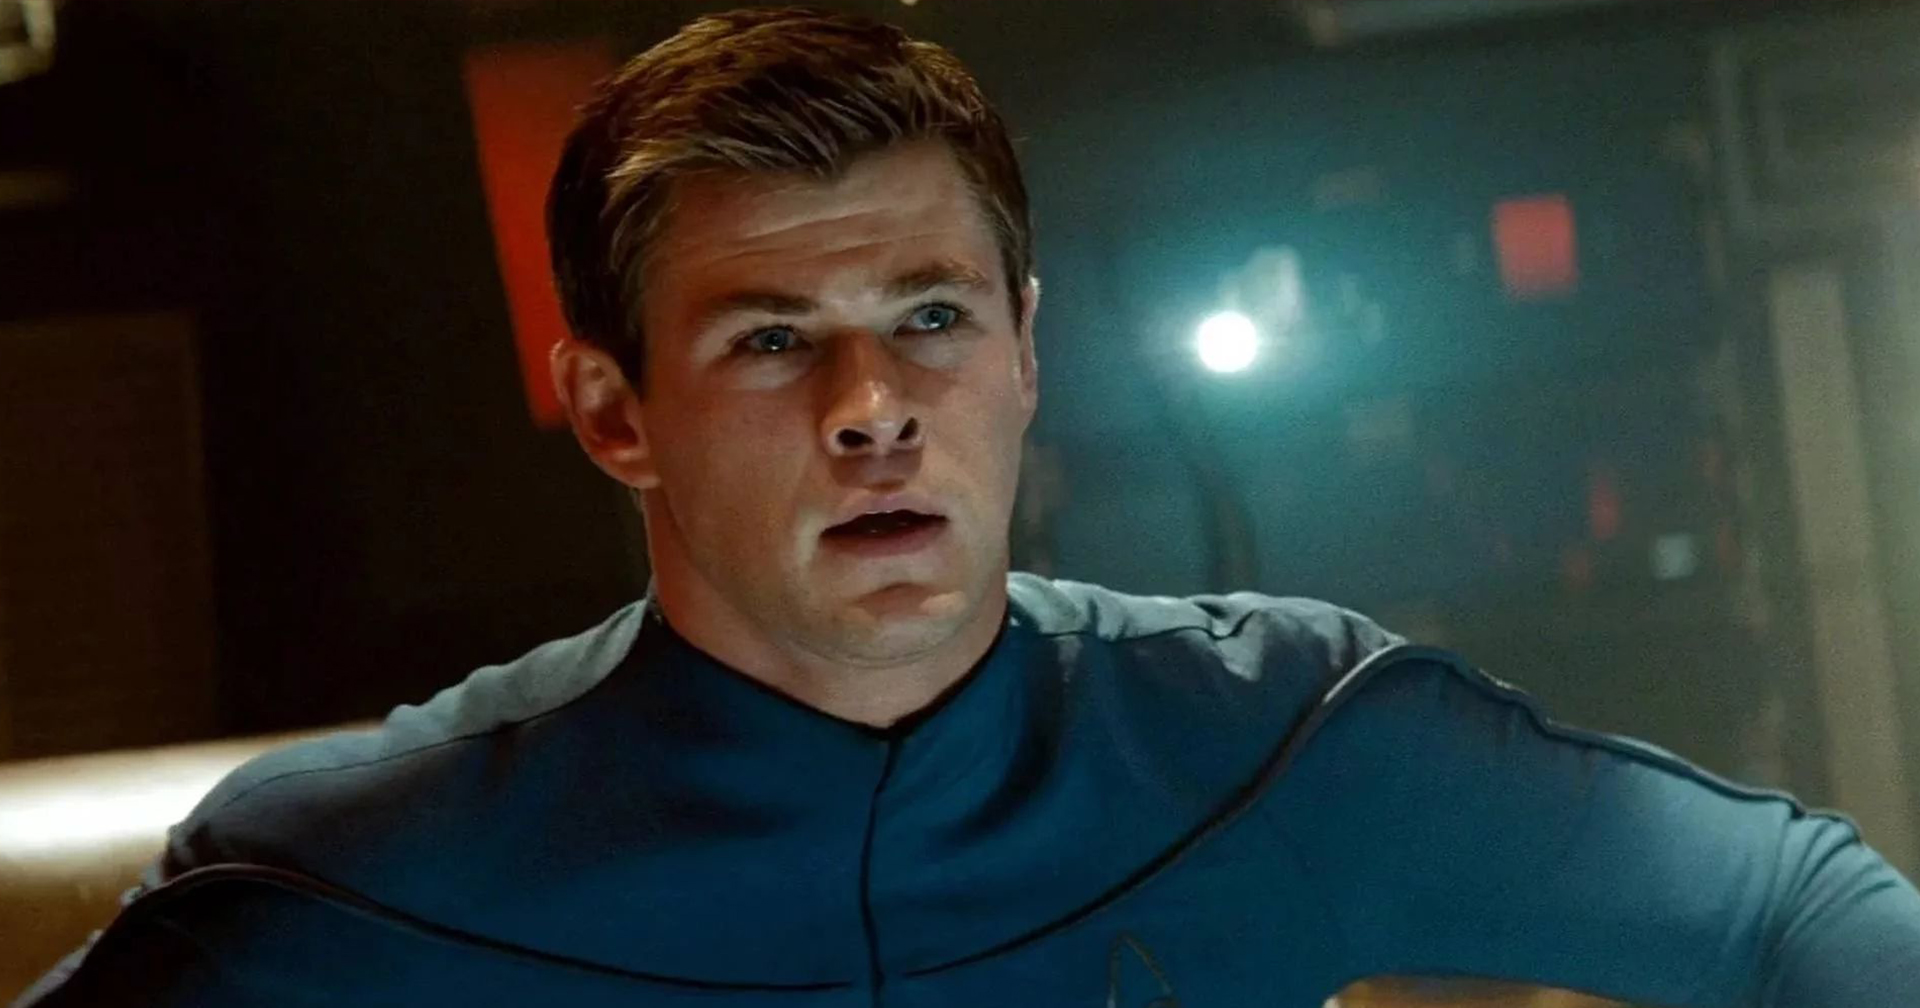 Chris Hemsworth ยินดีกลับมารับบท ‘พ่อกัปตันเคิร์ก’ อีกครั้งใน ‘Star Trek 4’